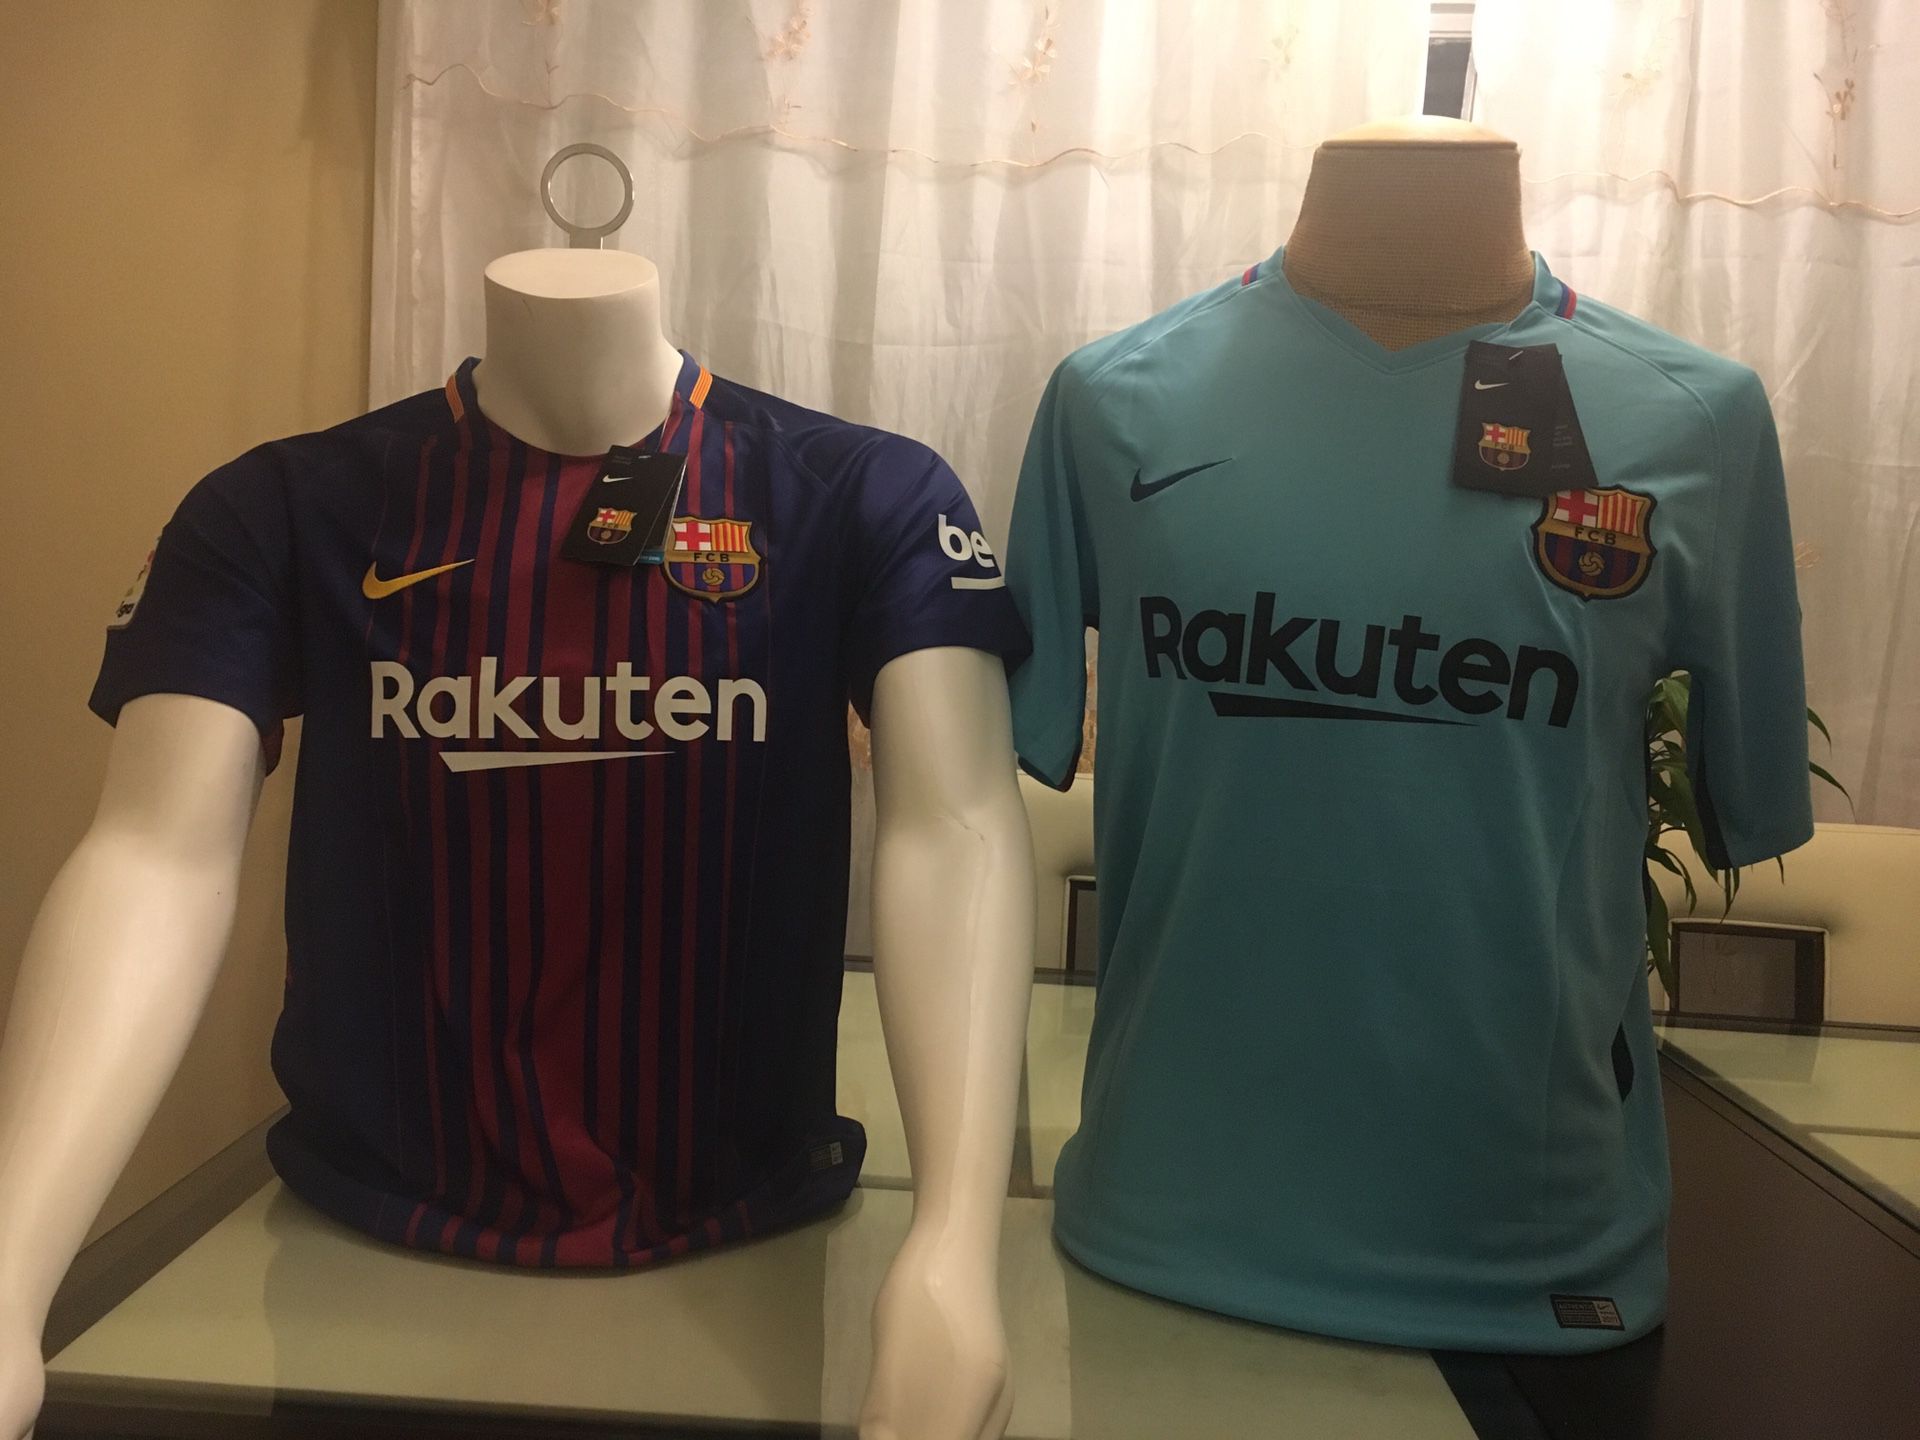 2018 soccer jerseys